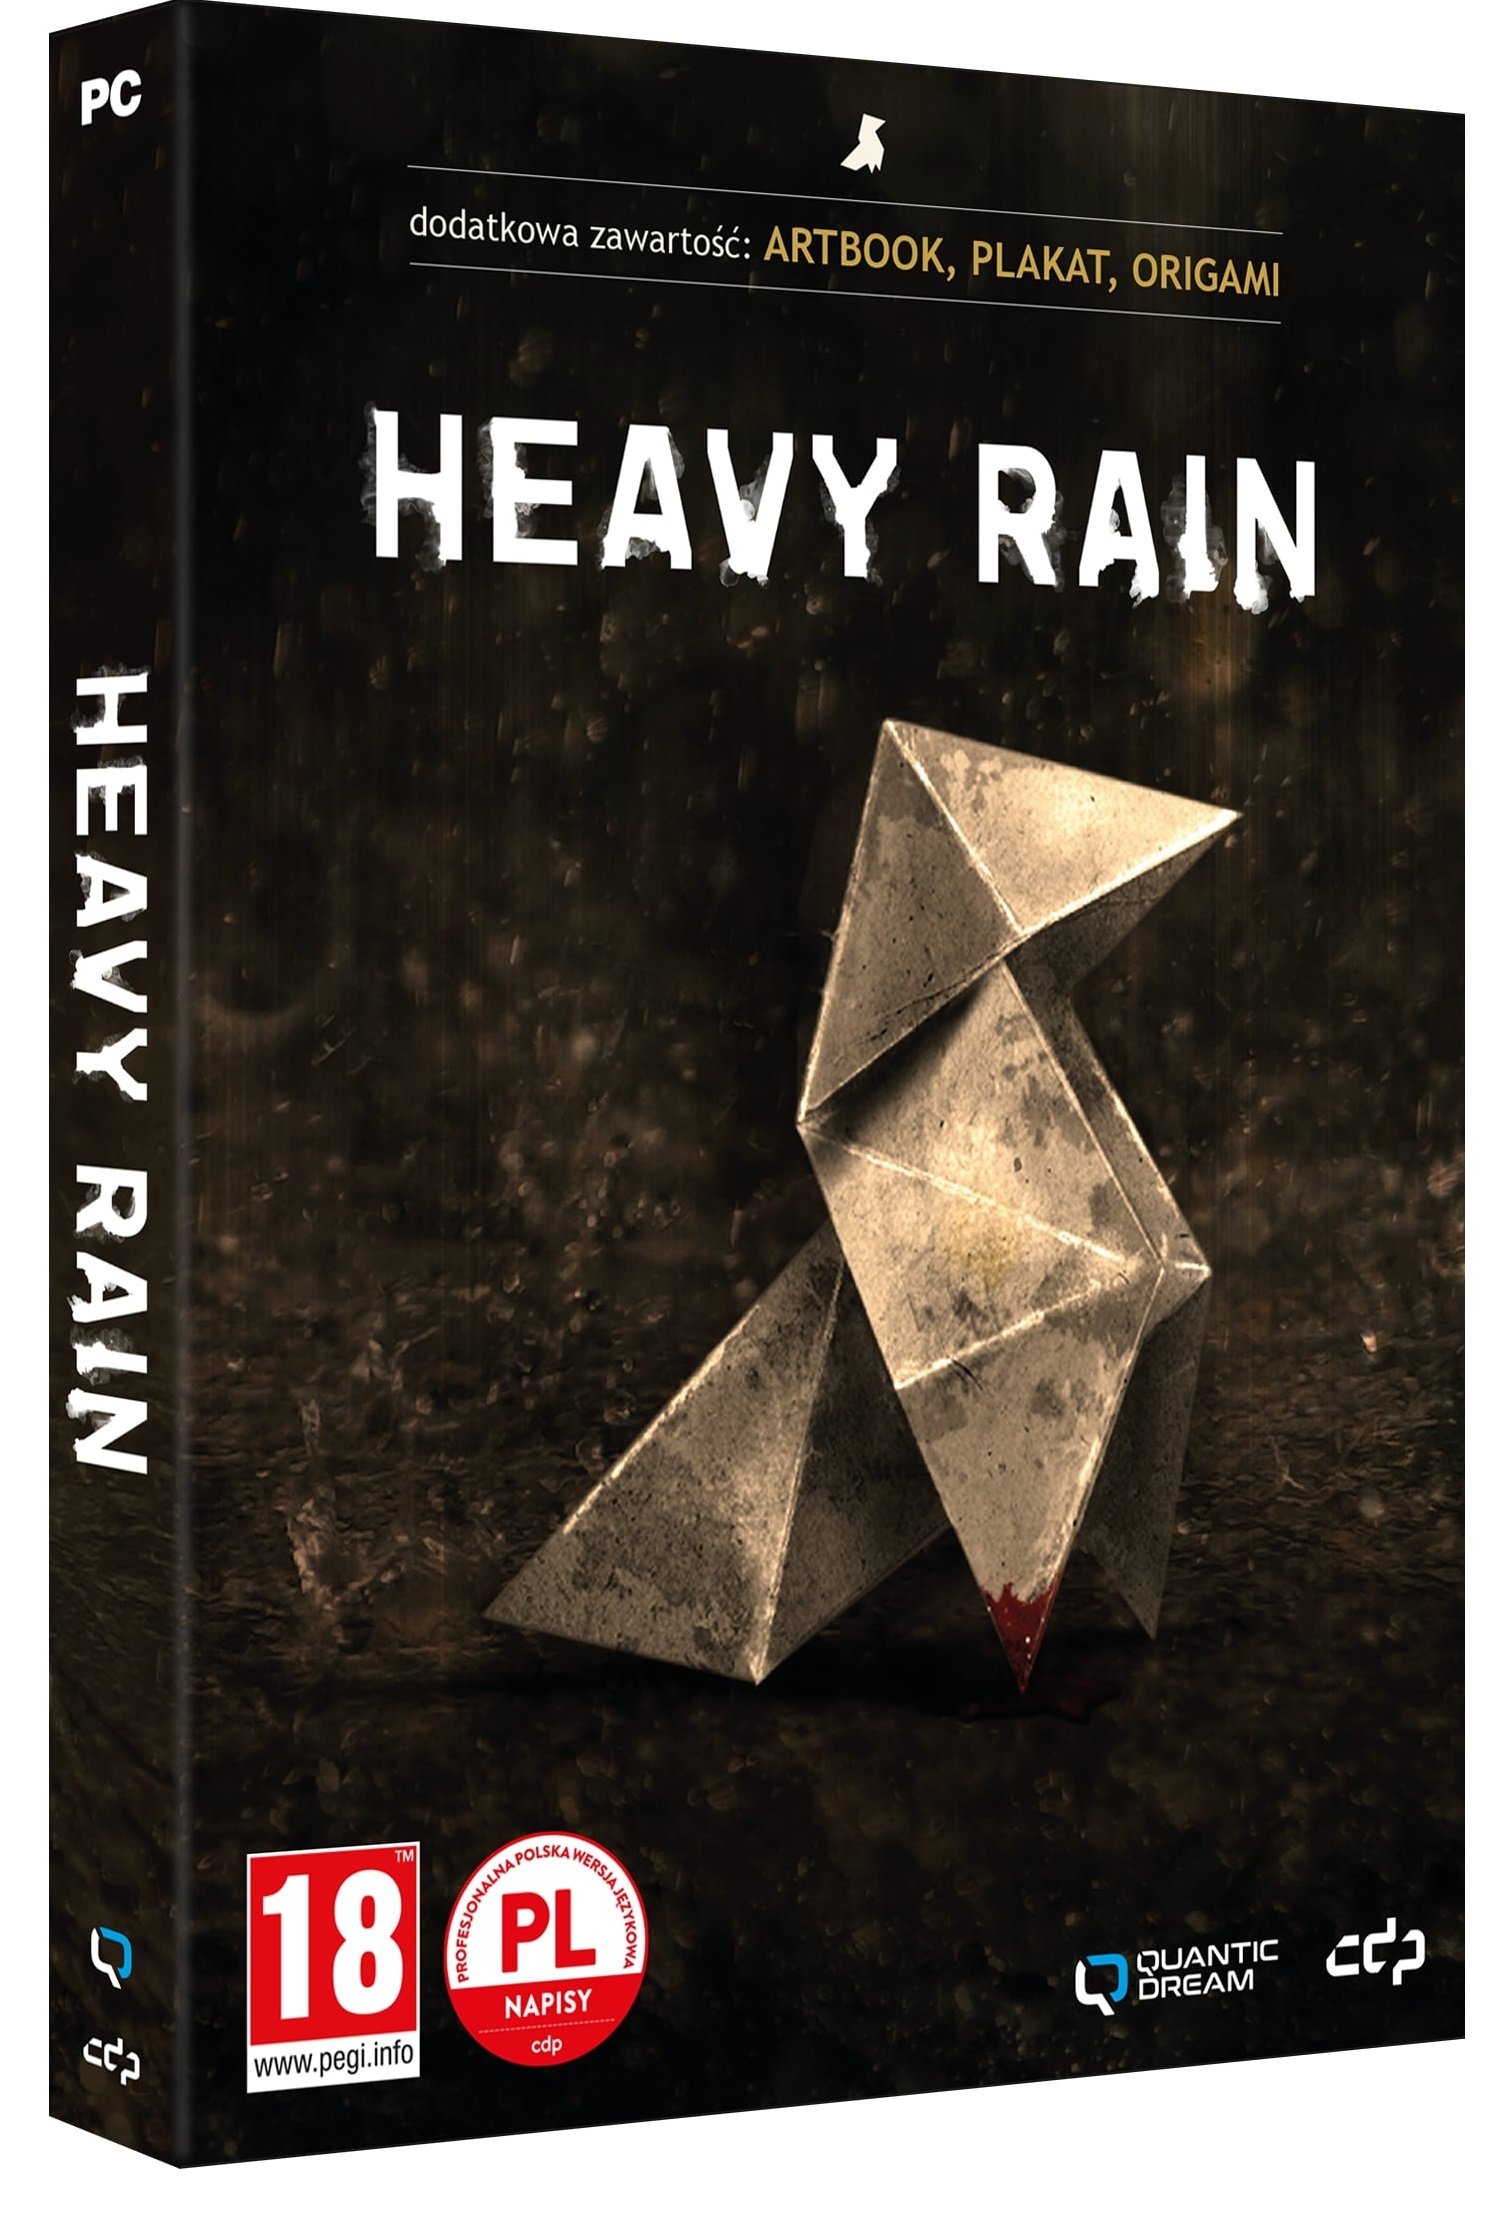 Heavy Rain Gra Pc Ceny I Opinie W Media Expert